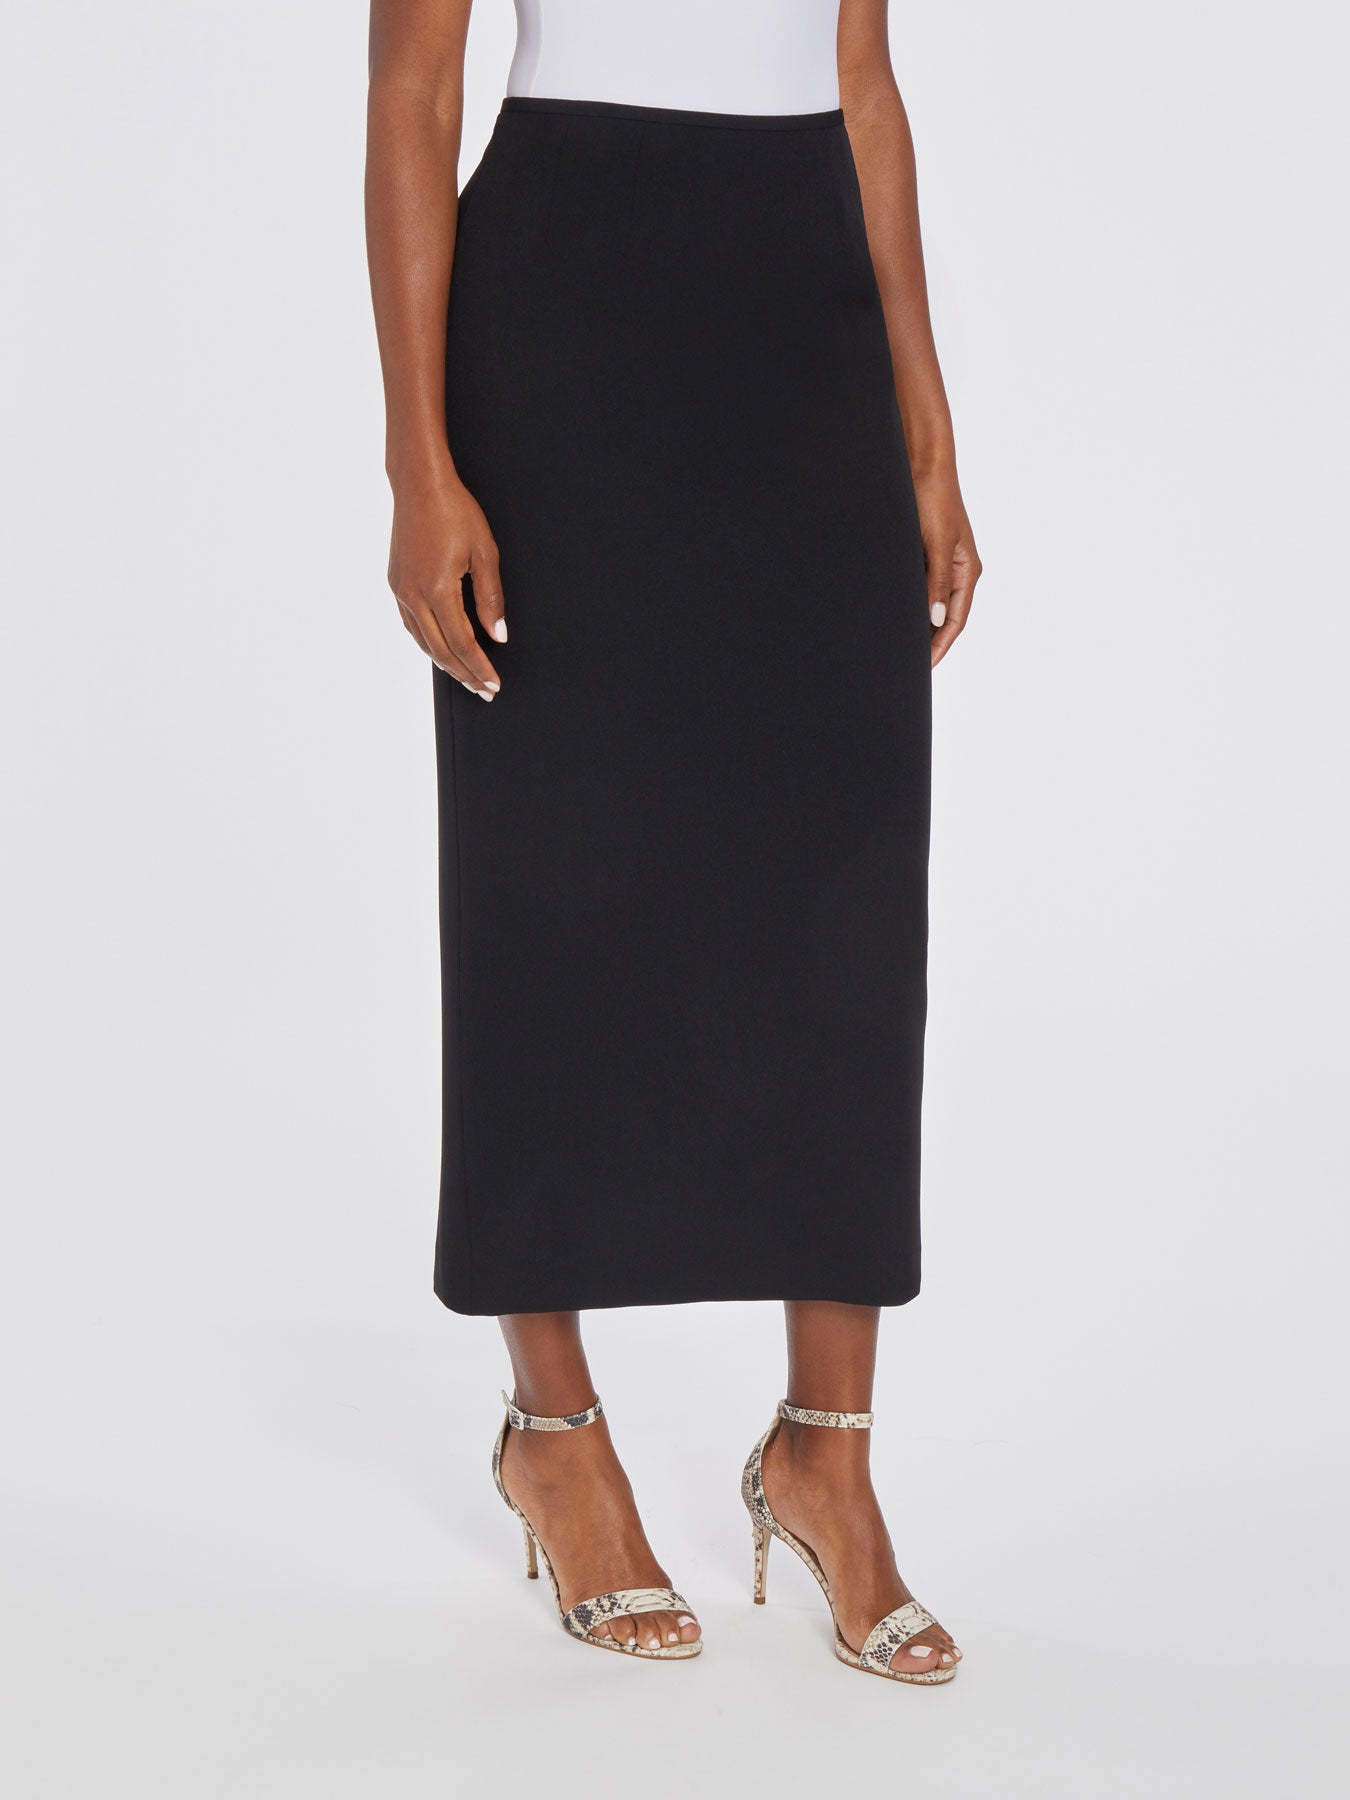 Buy Abhishti Black Crepe Flared Maxi Skirt - Skirts for Women 1545728 |  Myntra